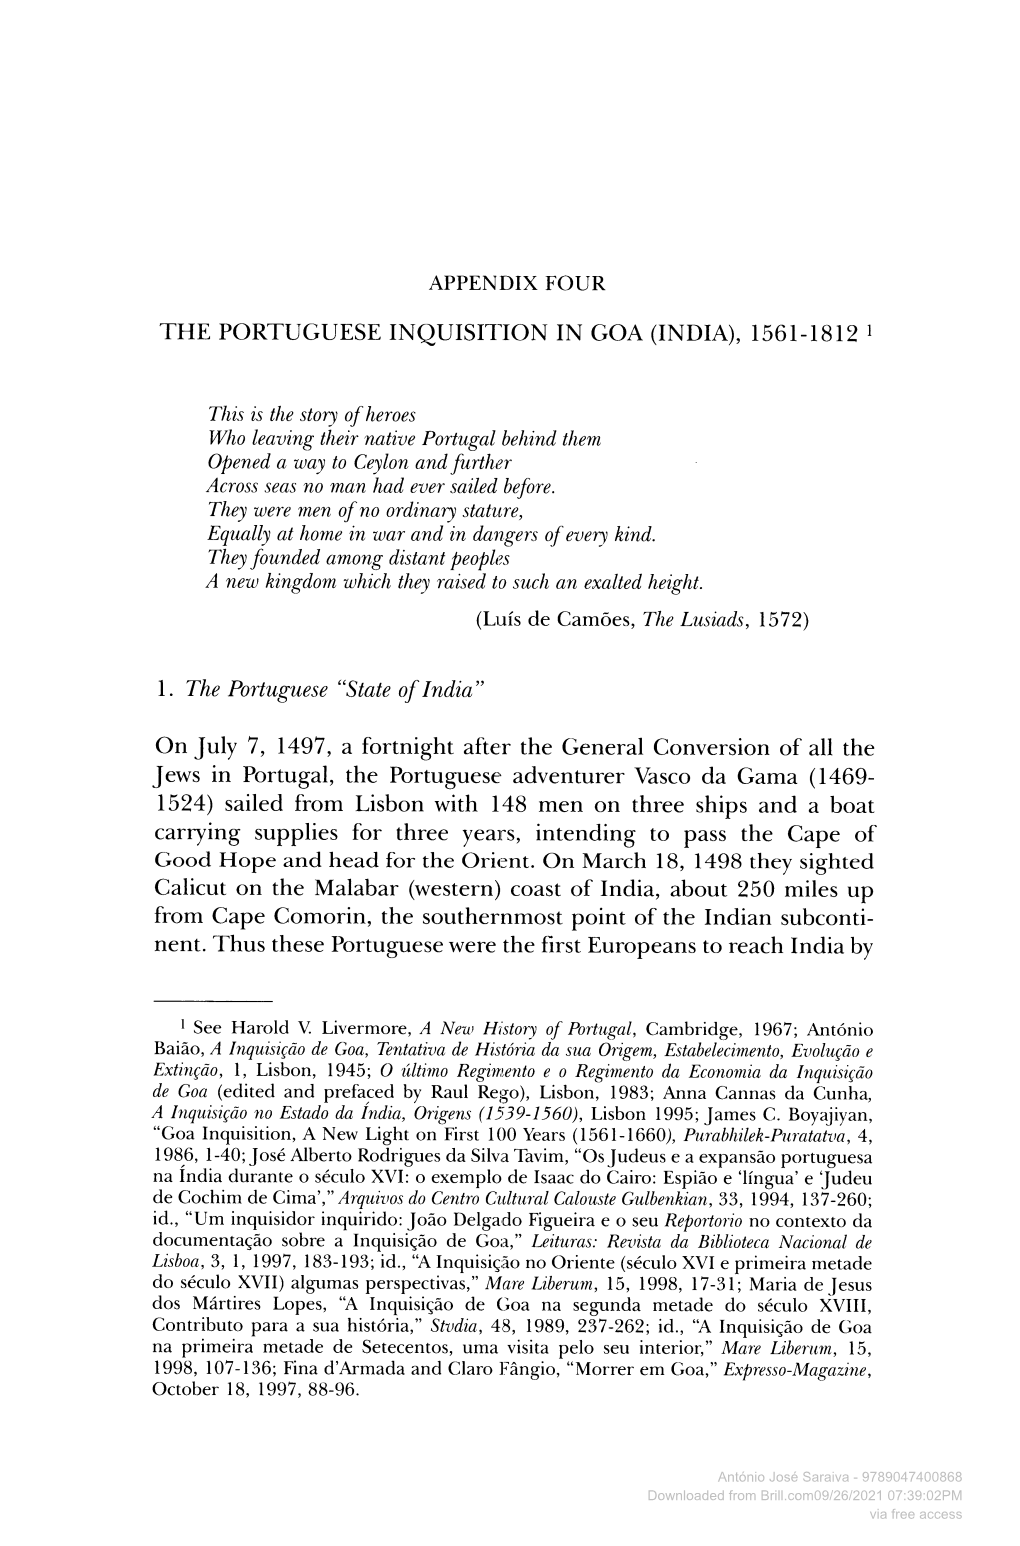 The Portuguese Inquisition in Goa (India), 1561-1812 1